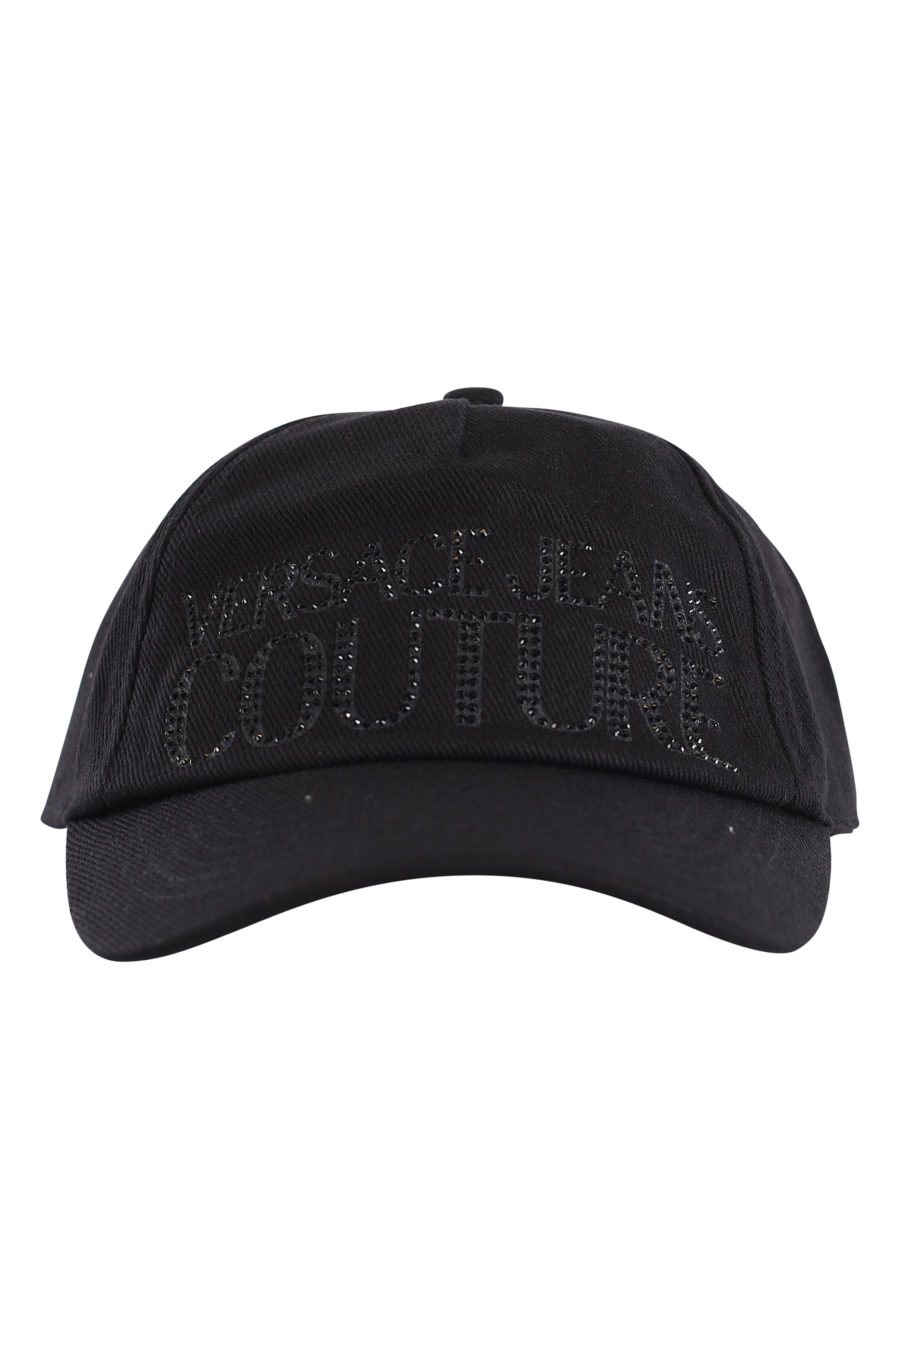 Gorra negra de pana con logo en "strass" - IMG 0158